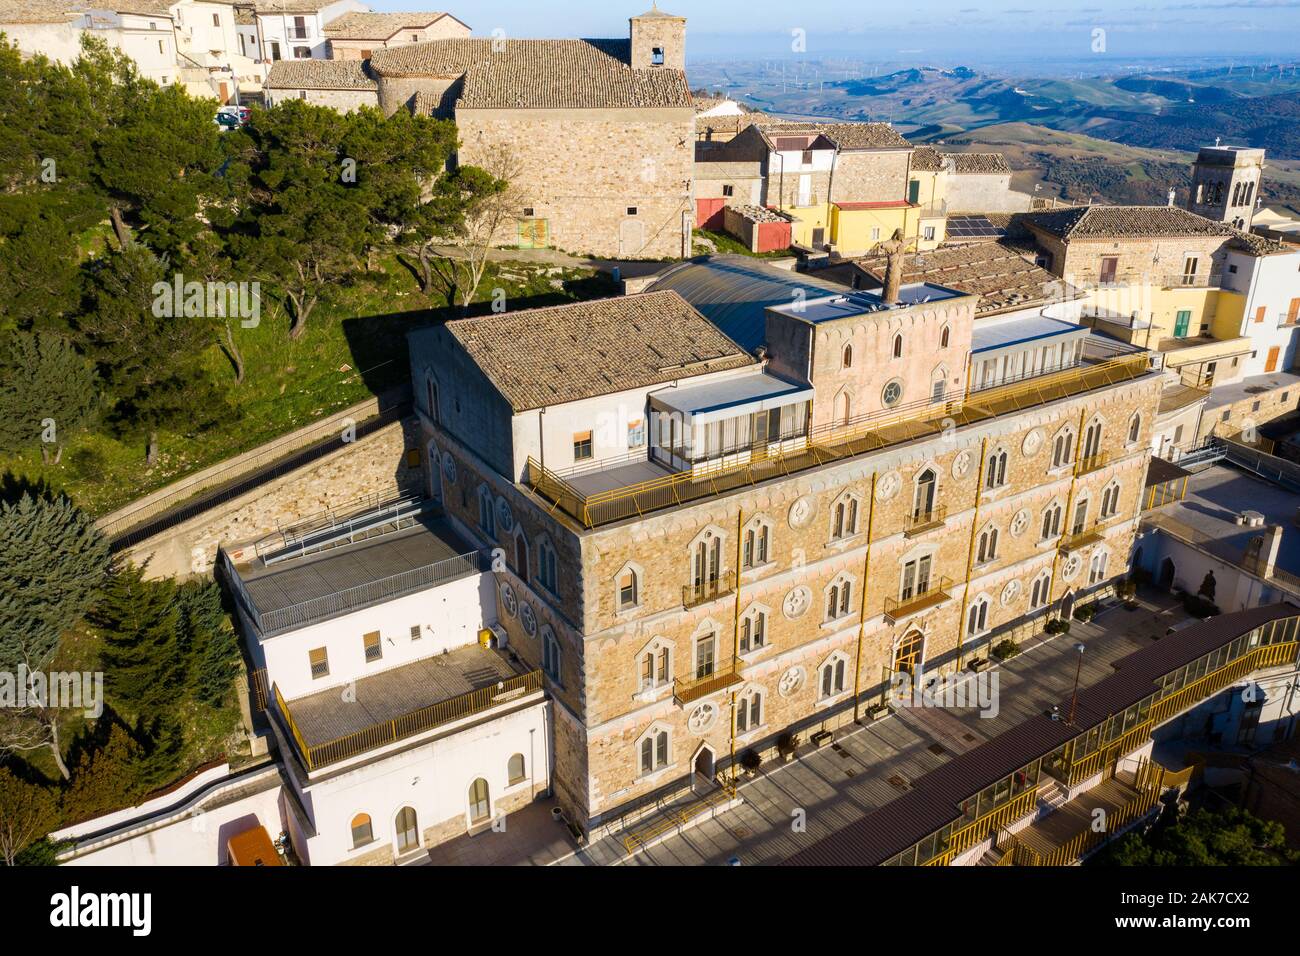 Fondazione Sacro Cuore di Gesù, maison de retraite, Sant'Agata di Puglia, Foggia, Italie Banque D'Images